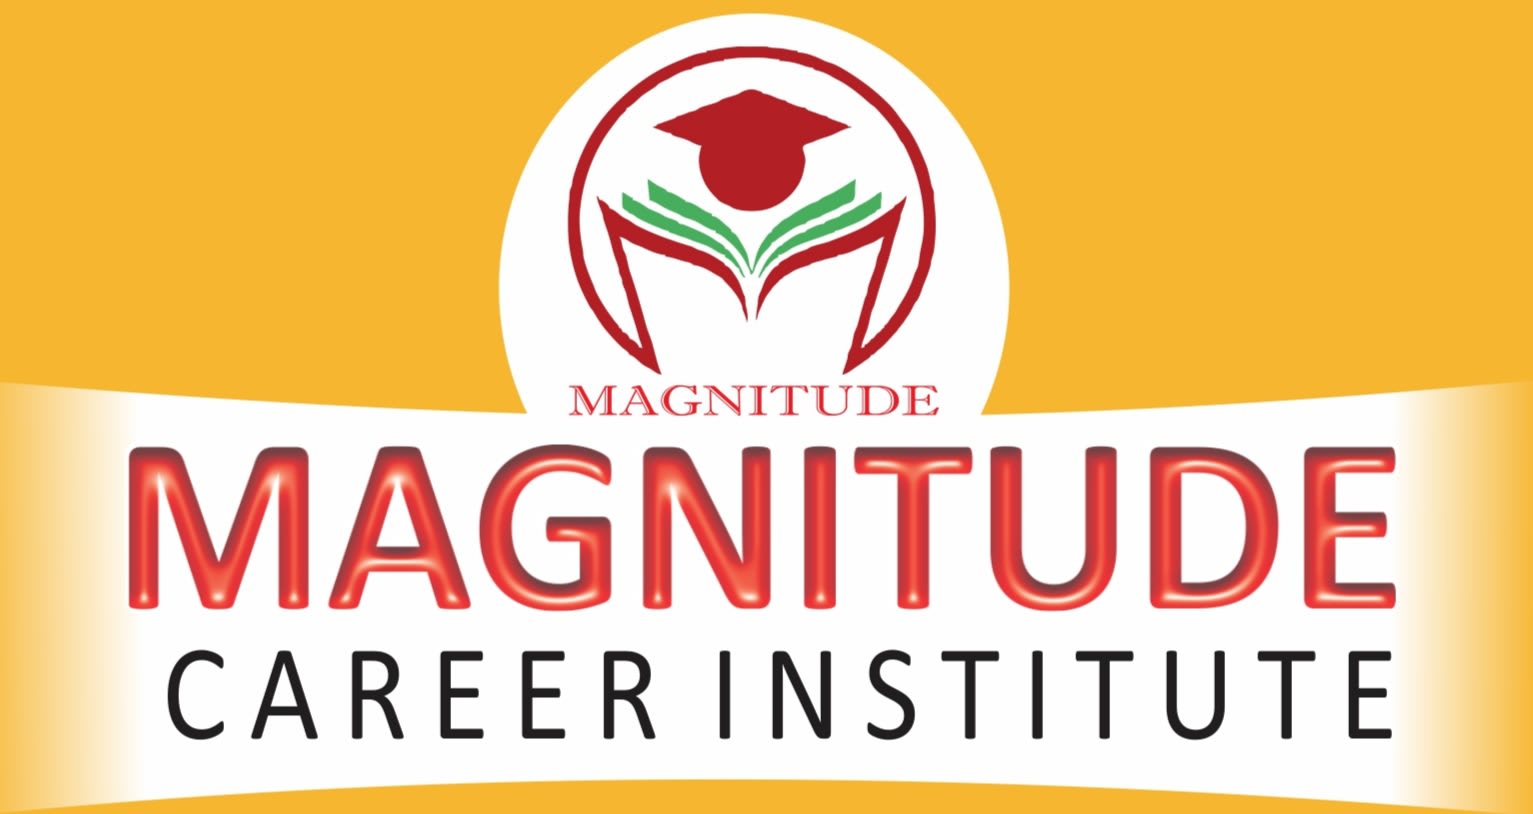 Magnitude Career Institute